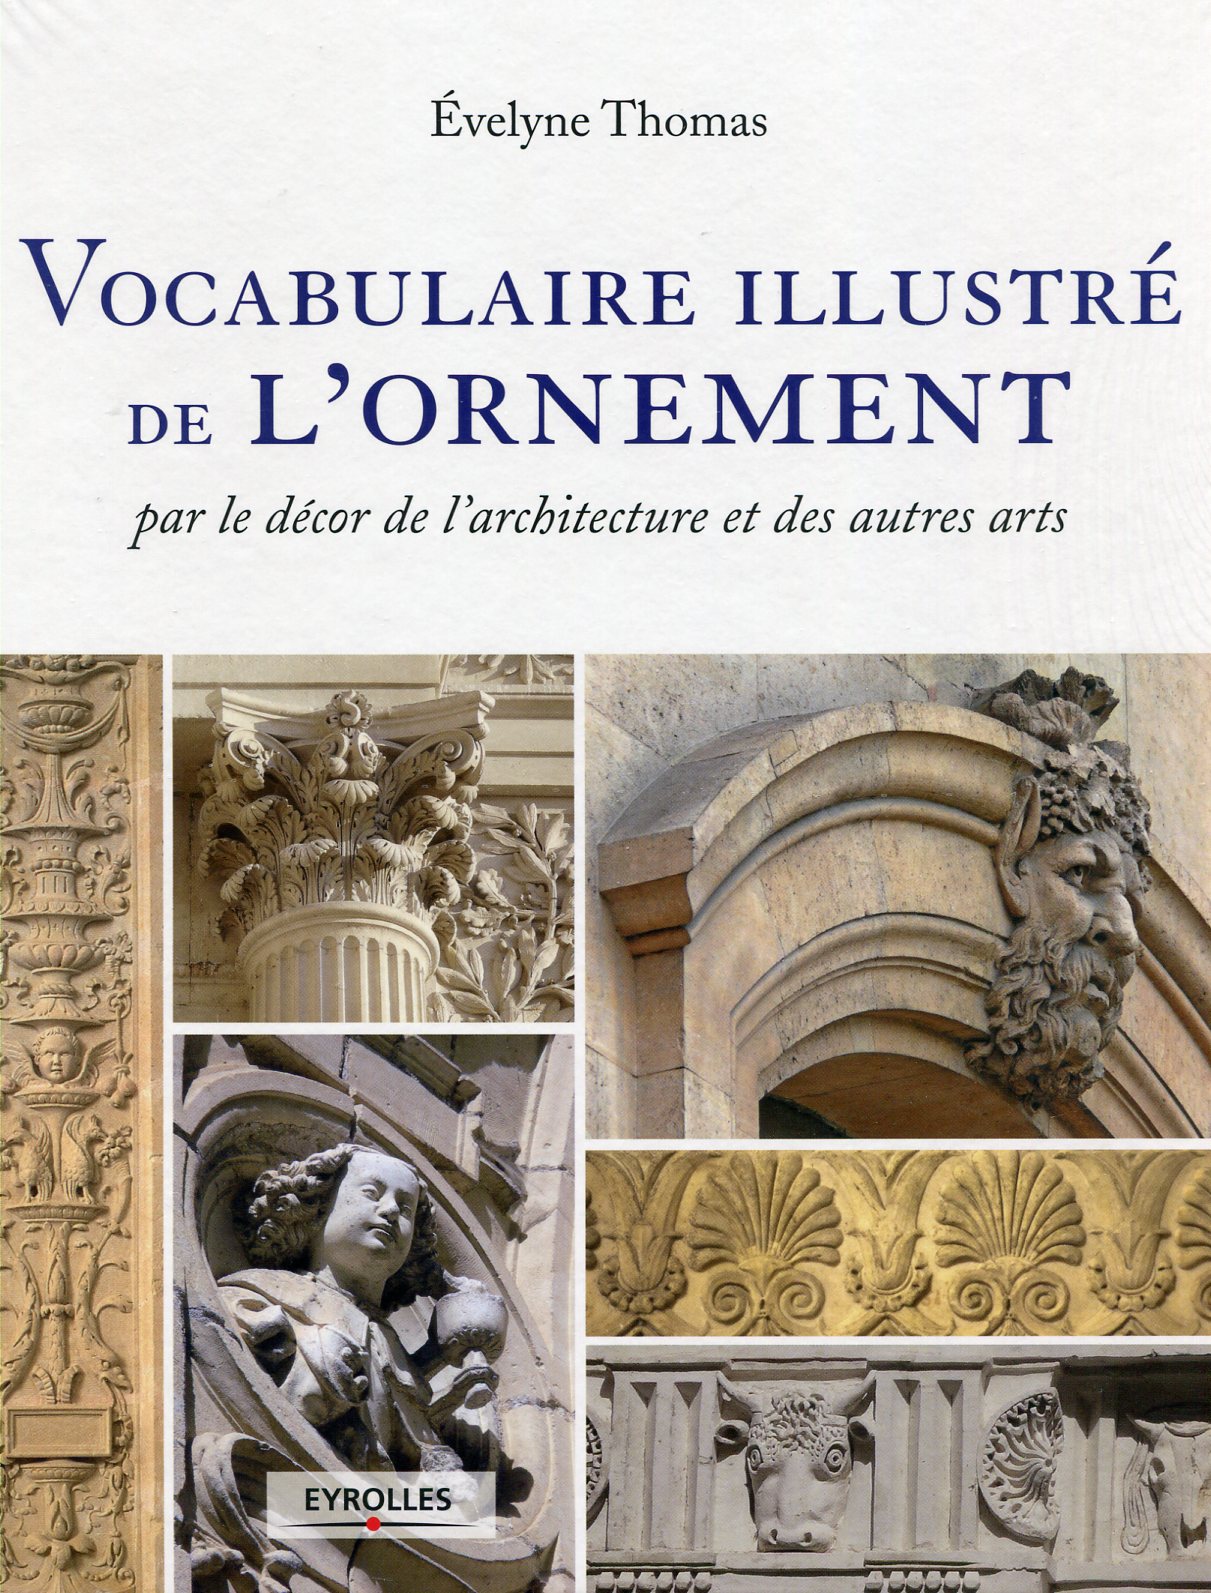 ÉPUISÉ - Vocabulaire illustré de l'ornement par le décor de l'architecture et des autres arts, 2012, 288 p.